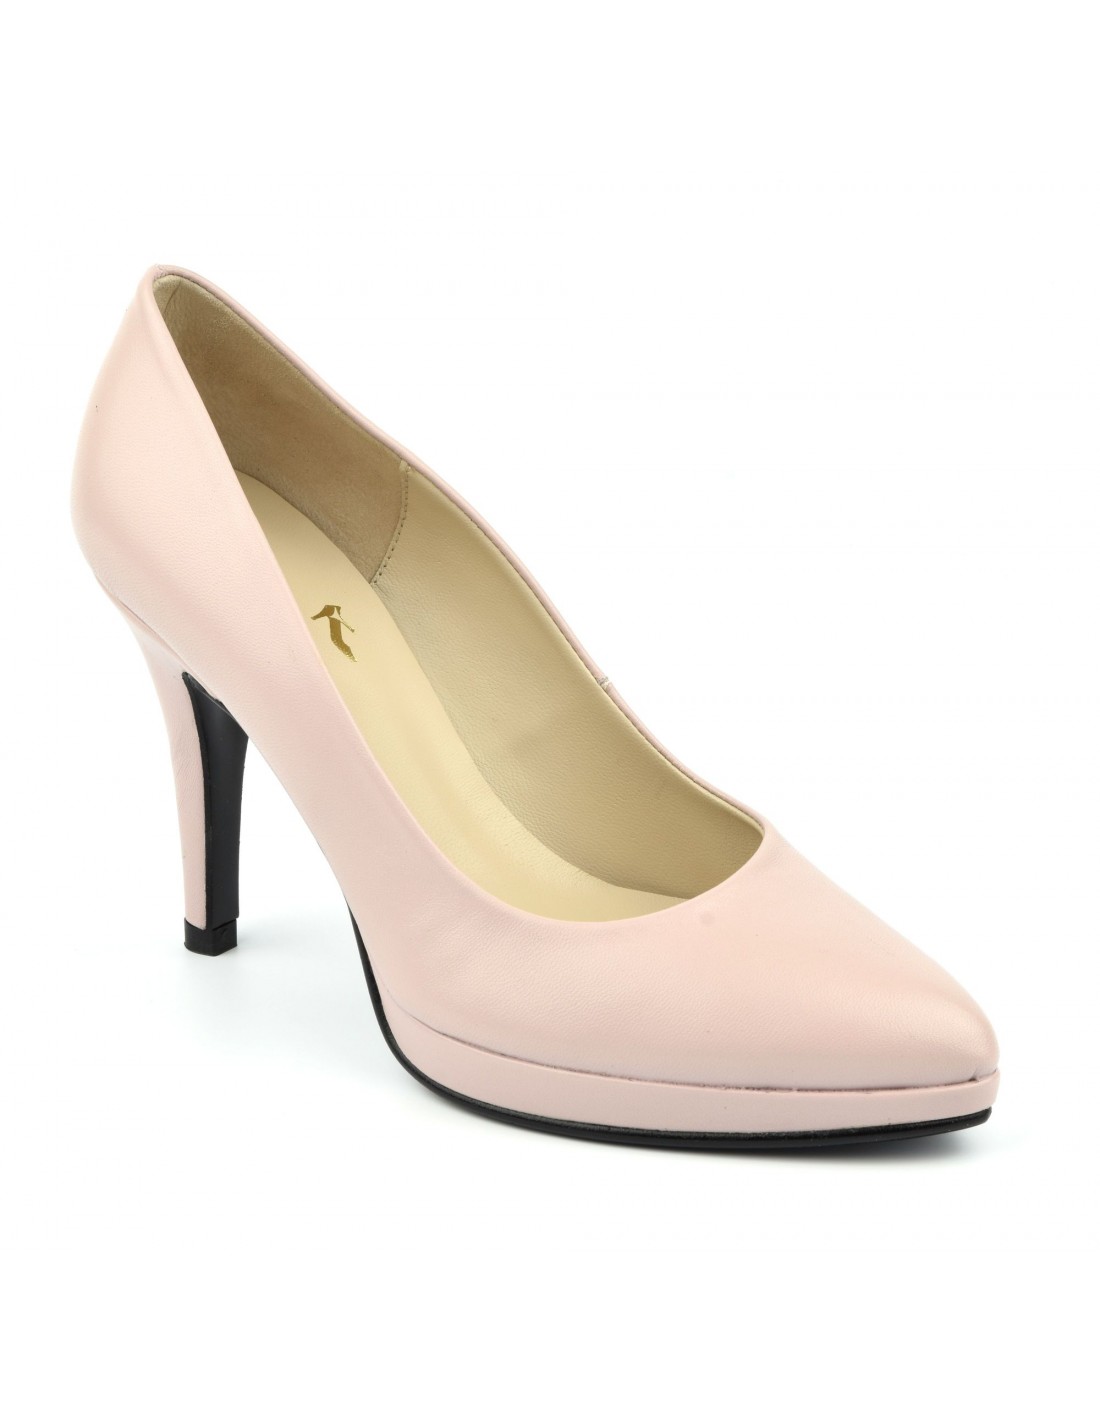 Zapatos de salón, plataforma, puntera punta, piel lisa, rosa palo, 1301, Maria Jamy